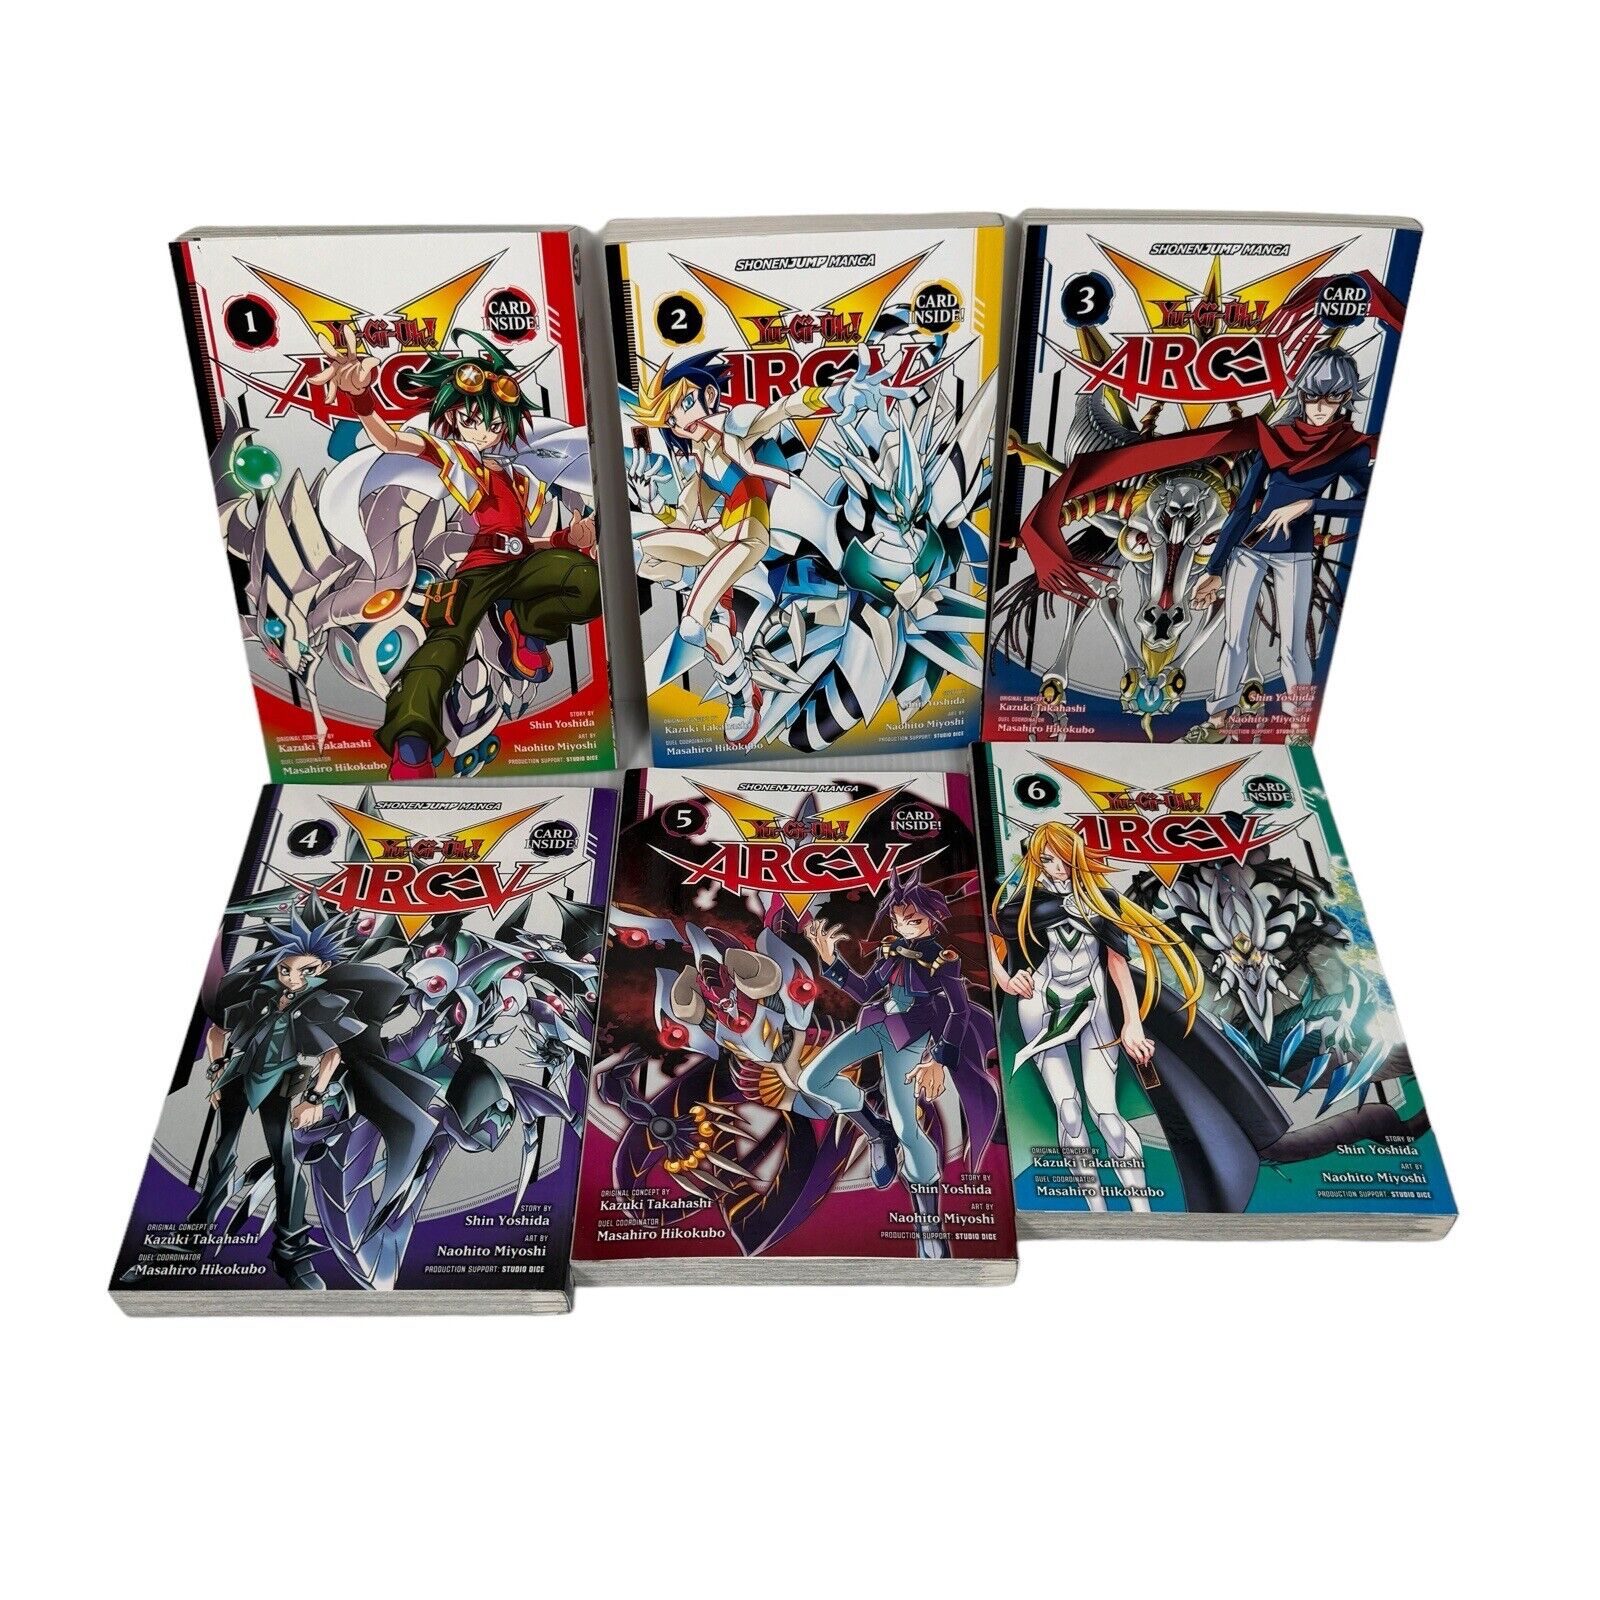 Lot of 6 Yu-Gi-Oh ARC V Manga Vol. 1-6 by Kazuki Takahashi Viz Media